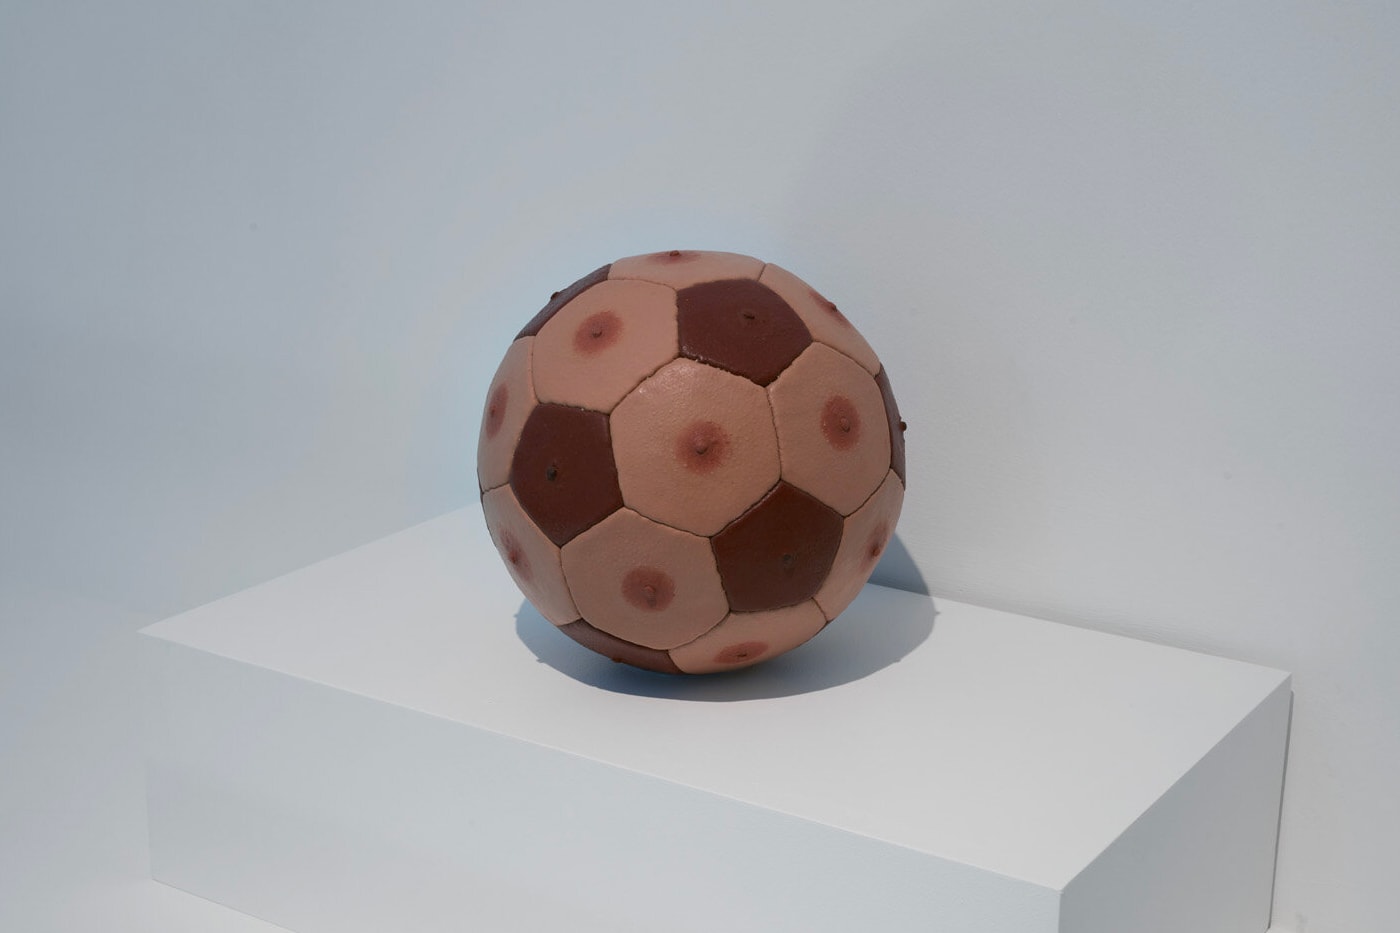 Стадион «Тоттенхэм Хотспур» Галерея футбольного искусства Выставка мячей OOF Лондон Английская Премьер-лига